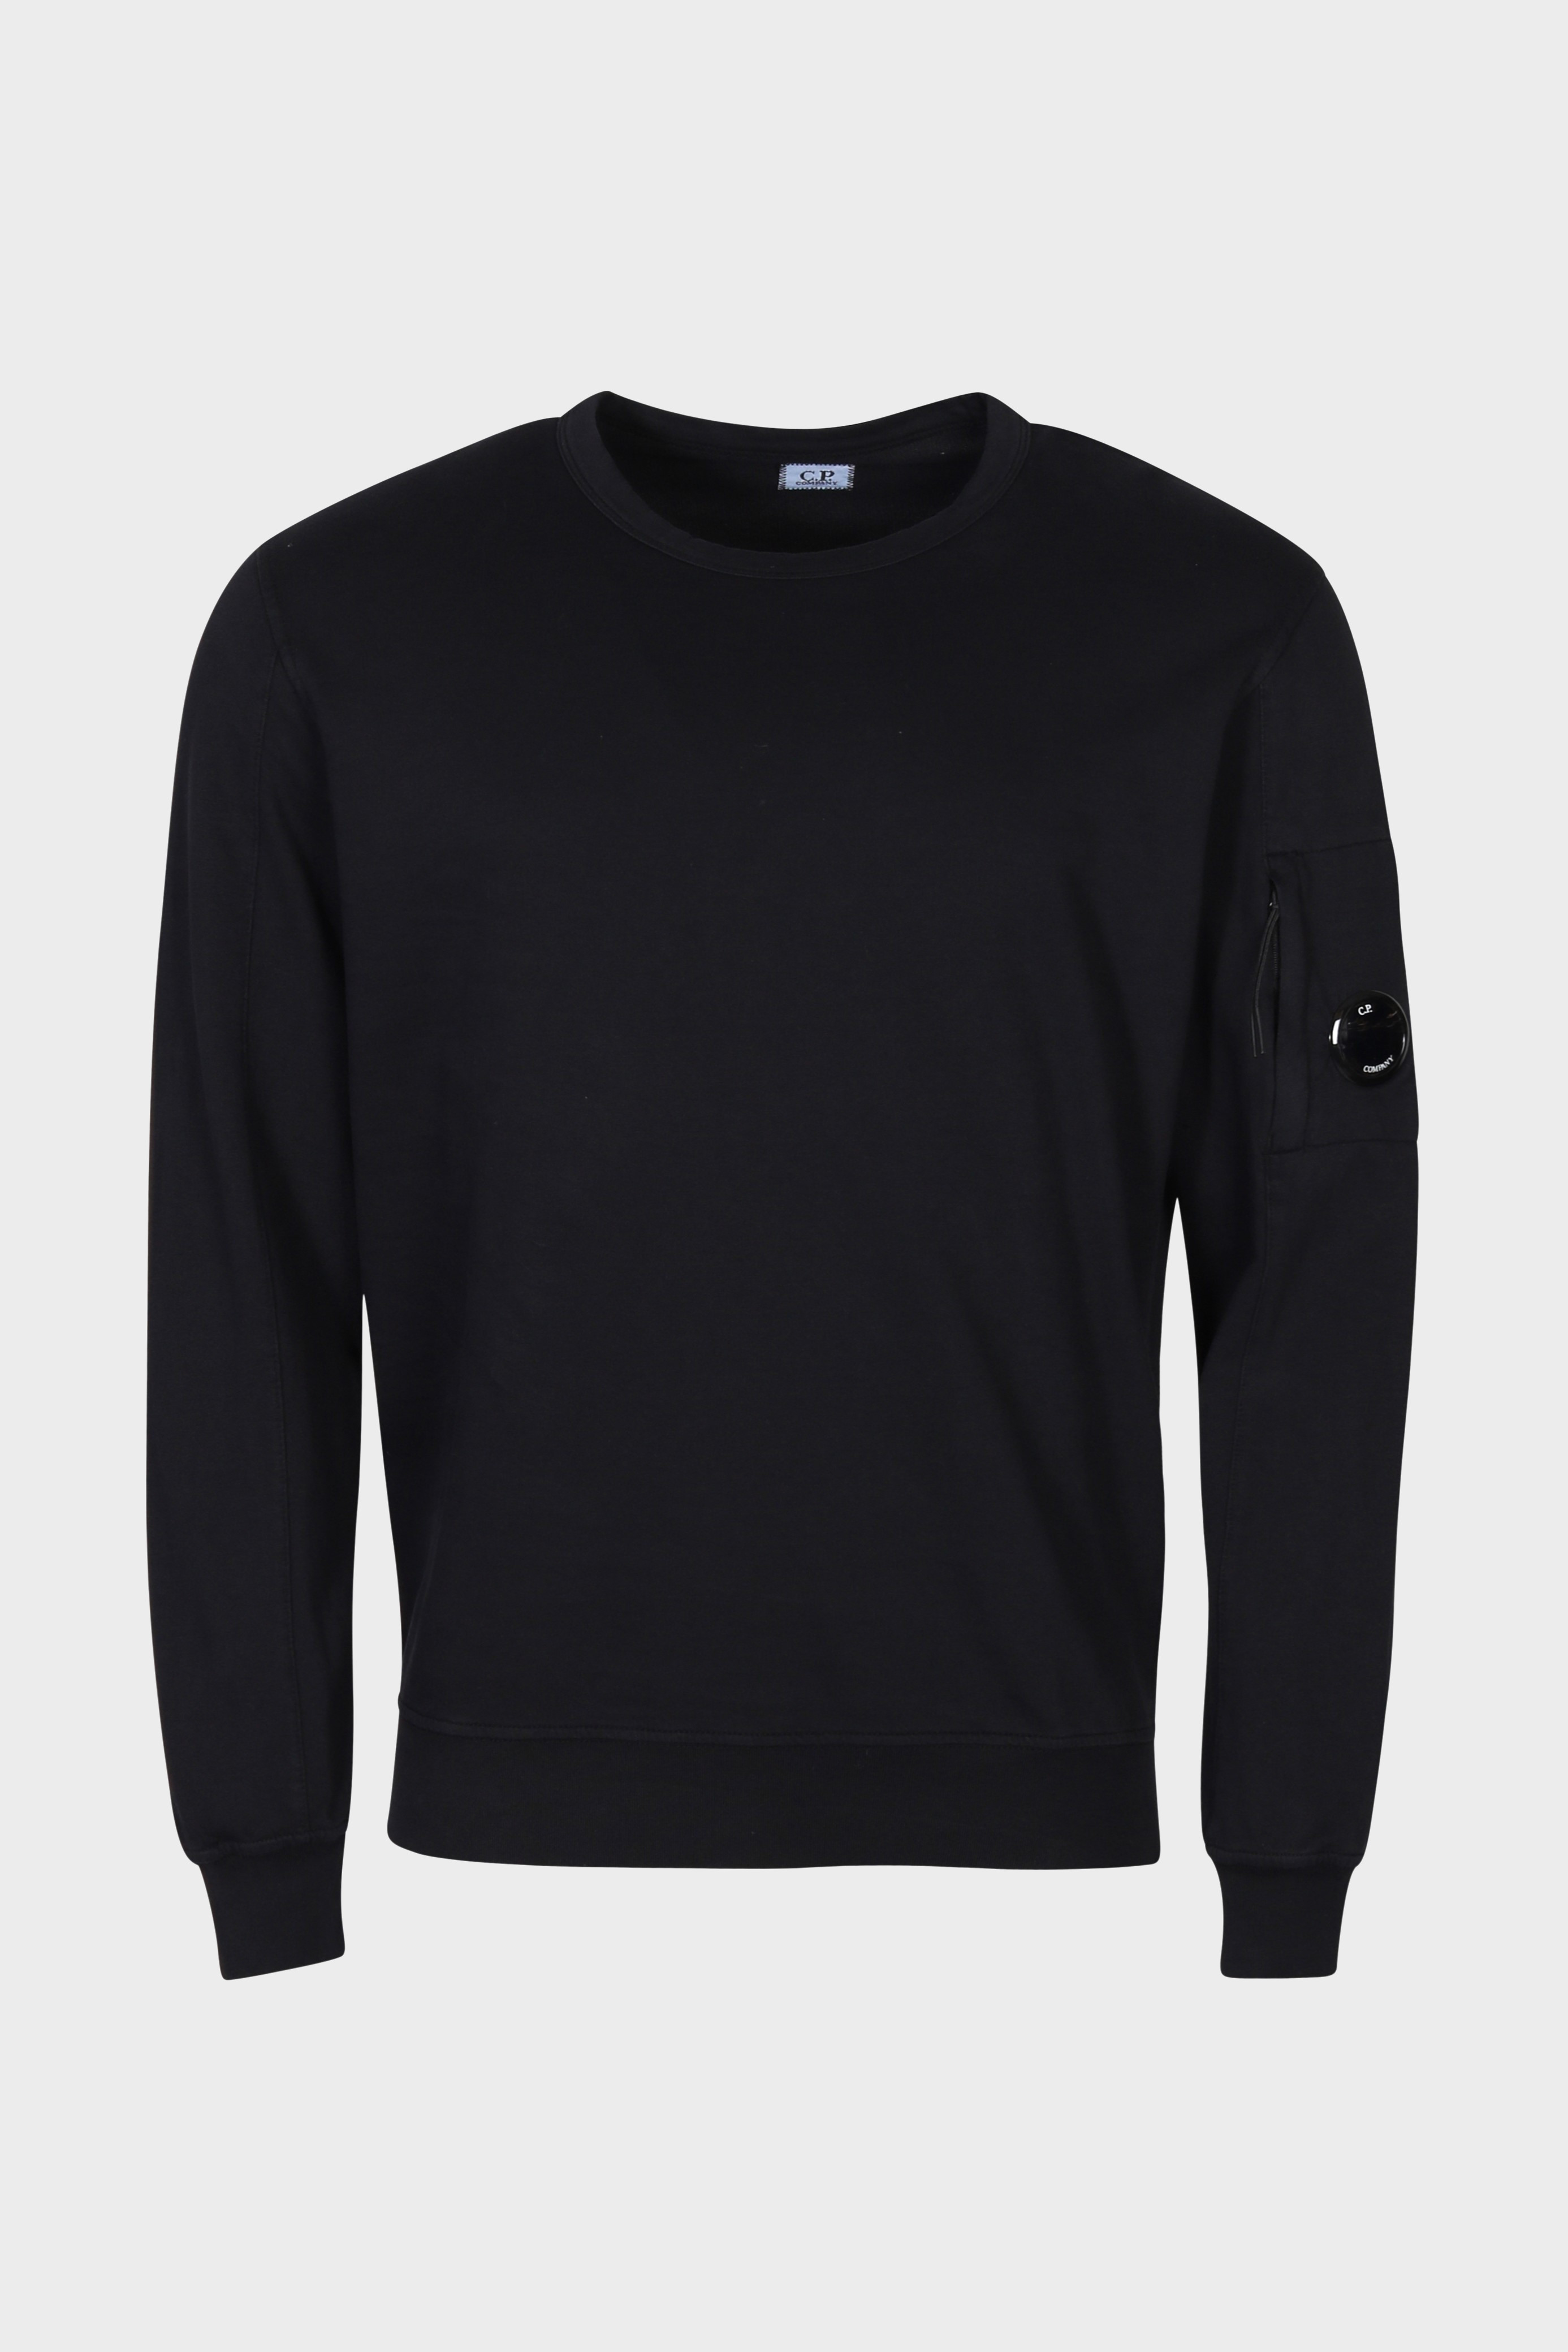 C.P. COMPANY Light Fleece Sweatshirt in Black